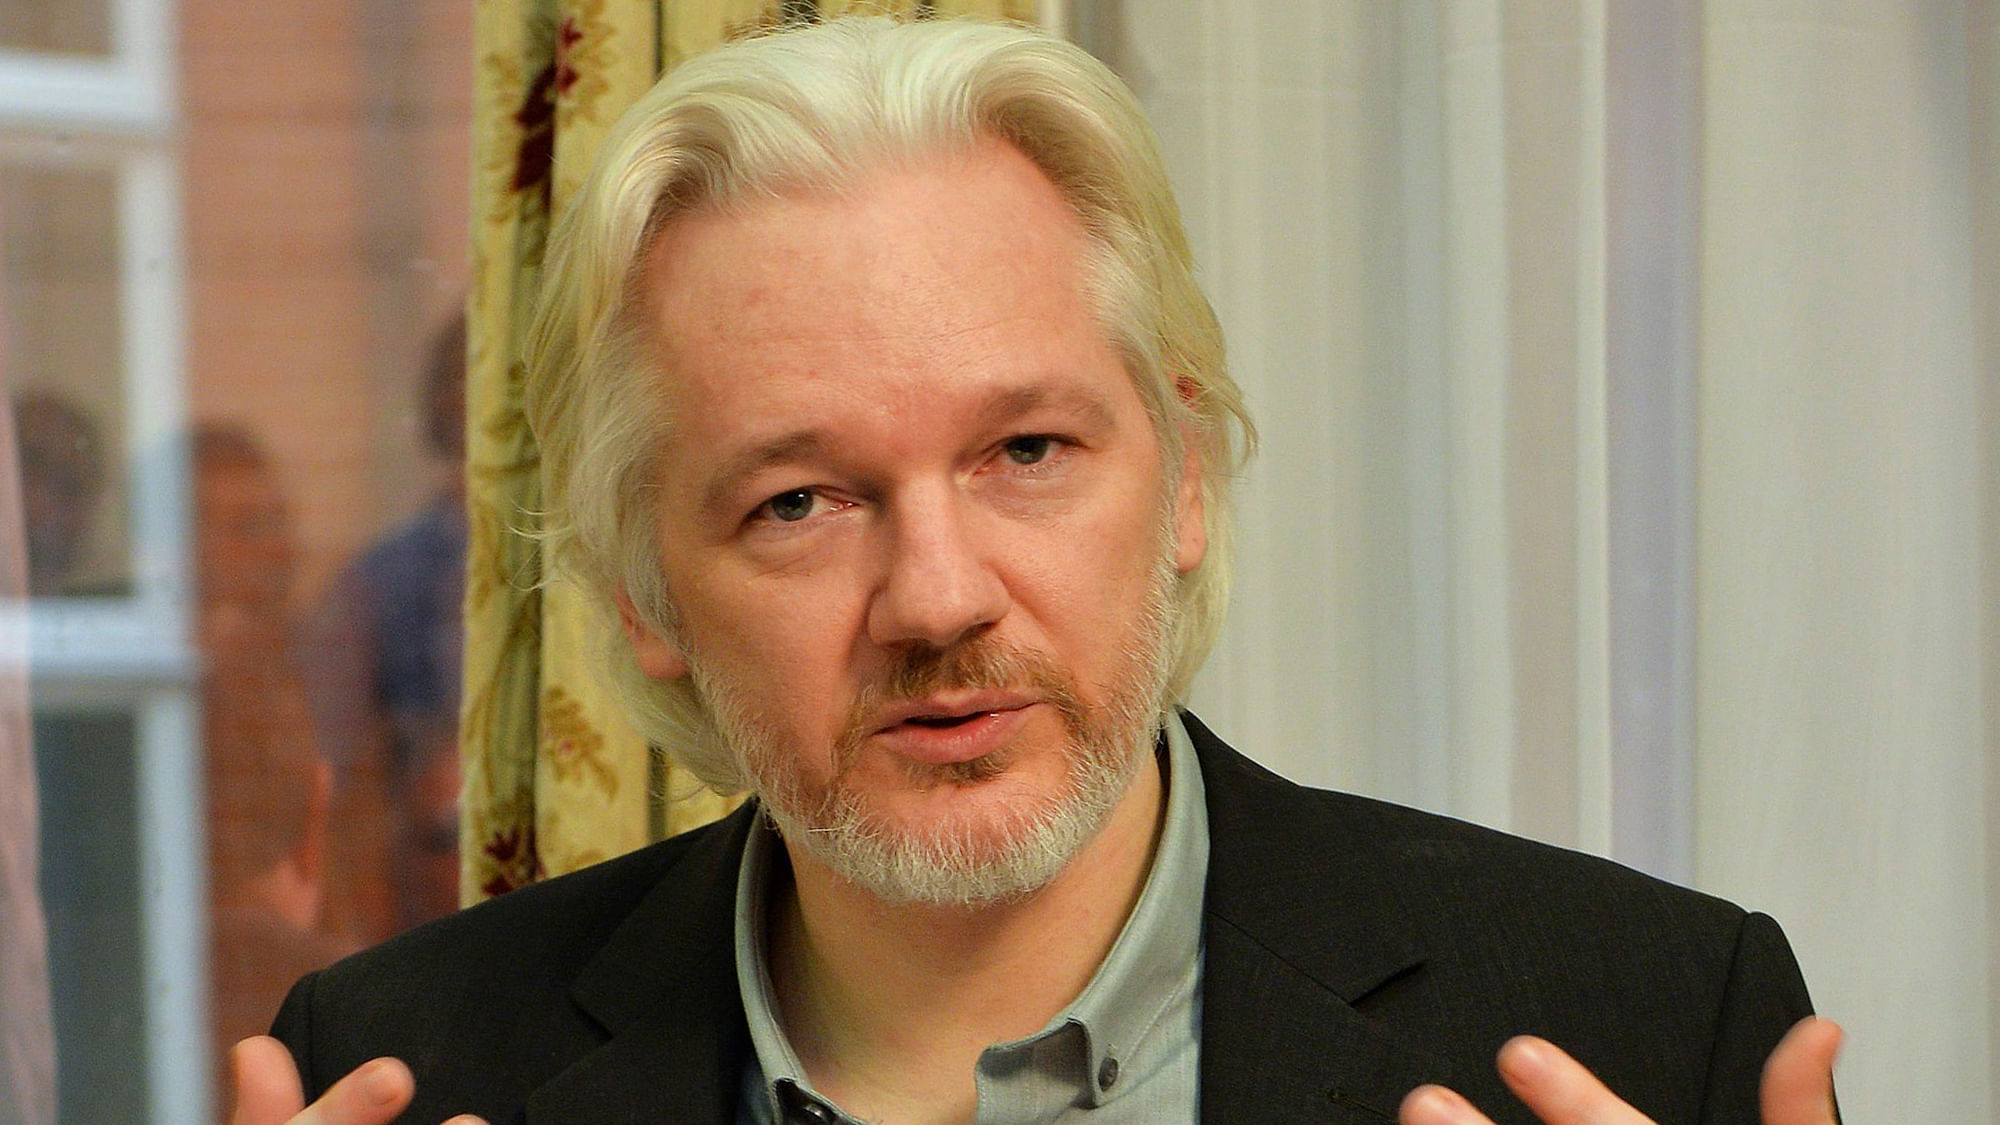 File photo of WikiLeaks founder Julian Assange.